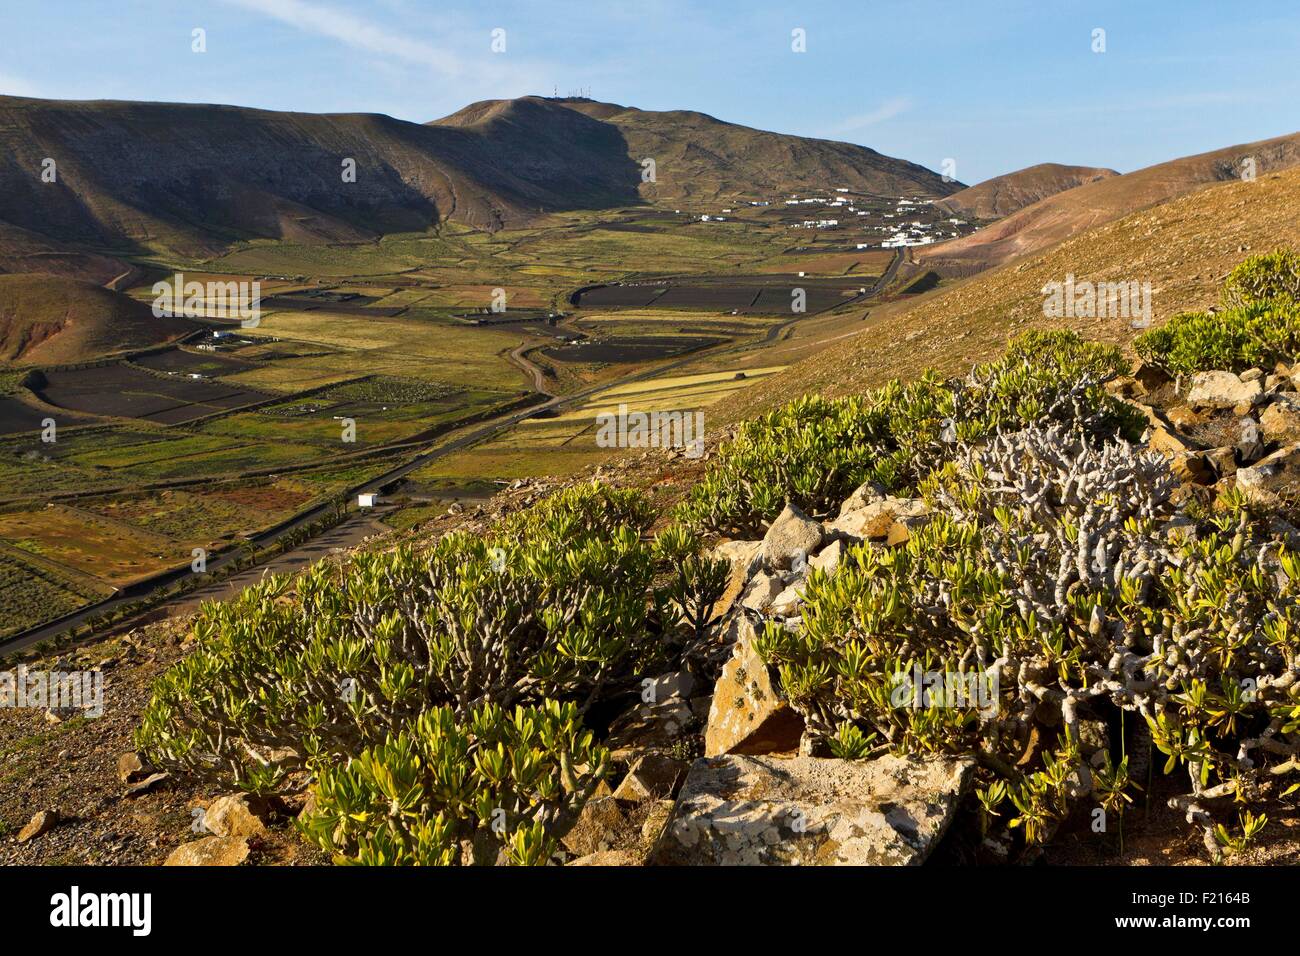 Spain, Canaries Islands, Lanzarote island, valley of Fenauso and Degollada Stock Photo